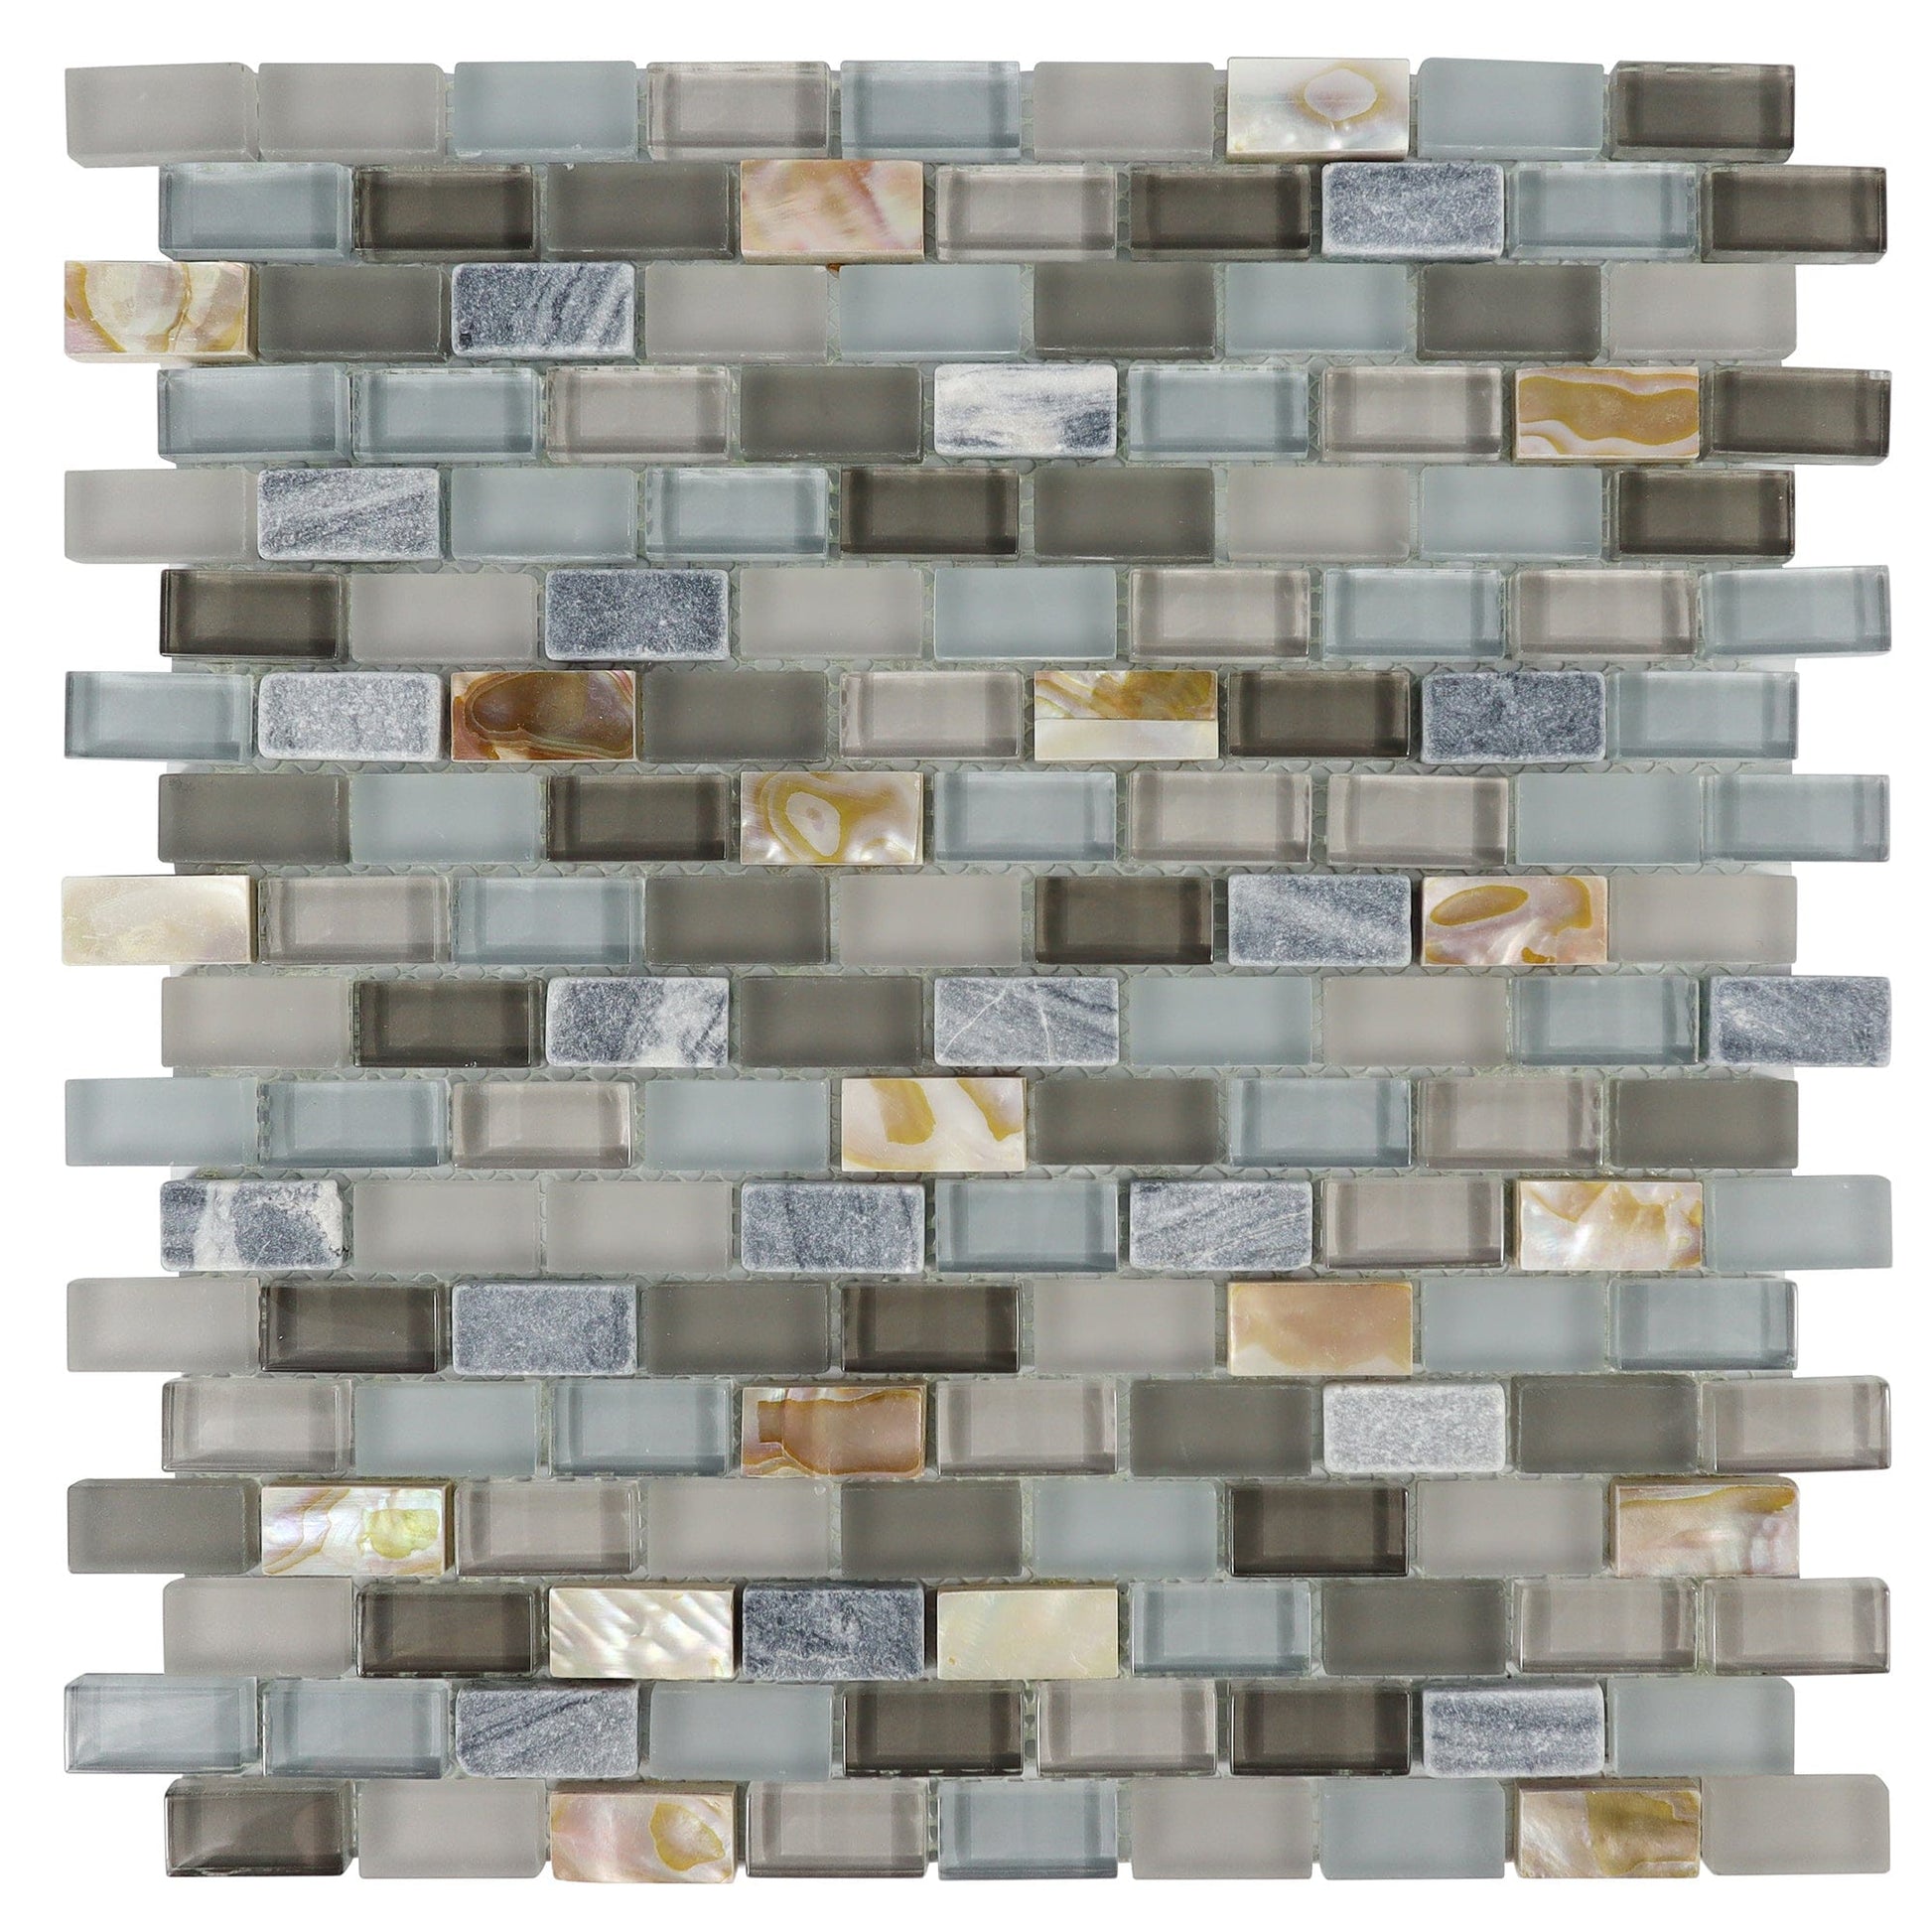 Chery Tile Inc Home & Garden Blend Stone Mosaic Tile, Mini Brick Shell Serie Tile